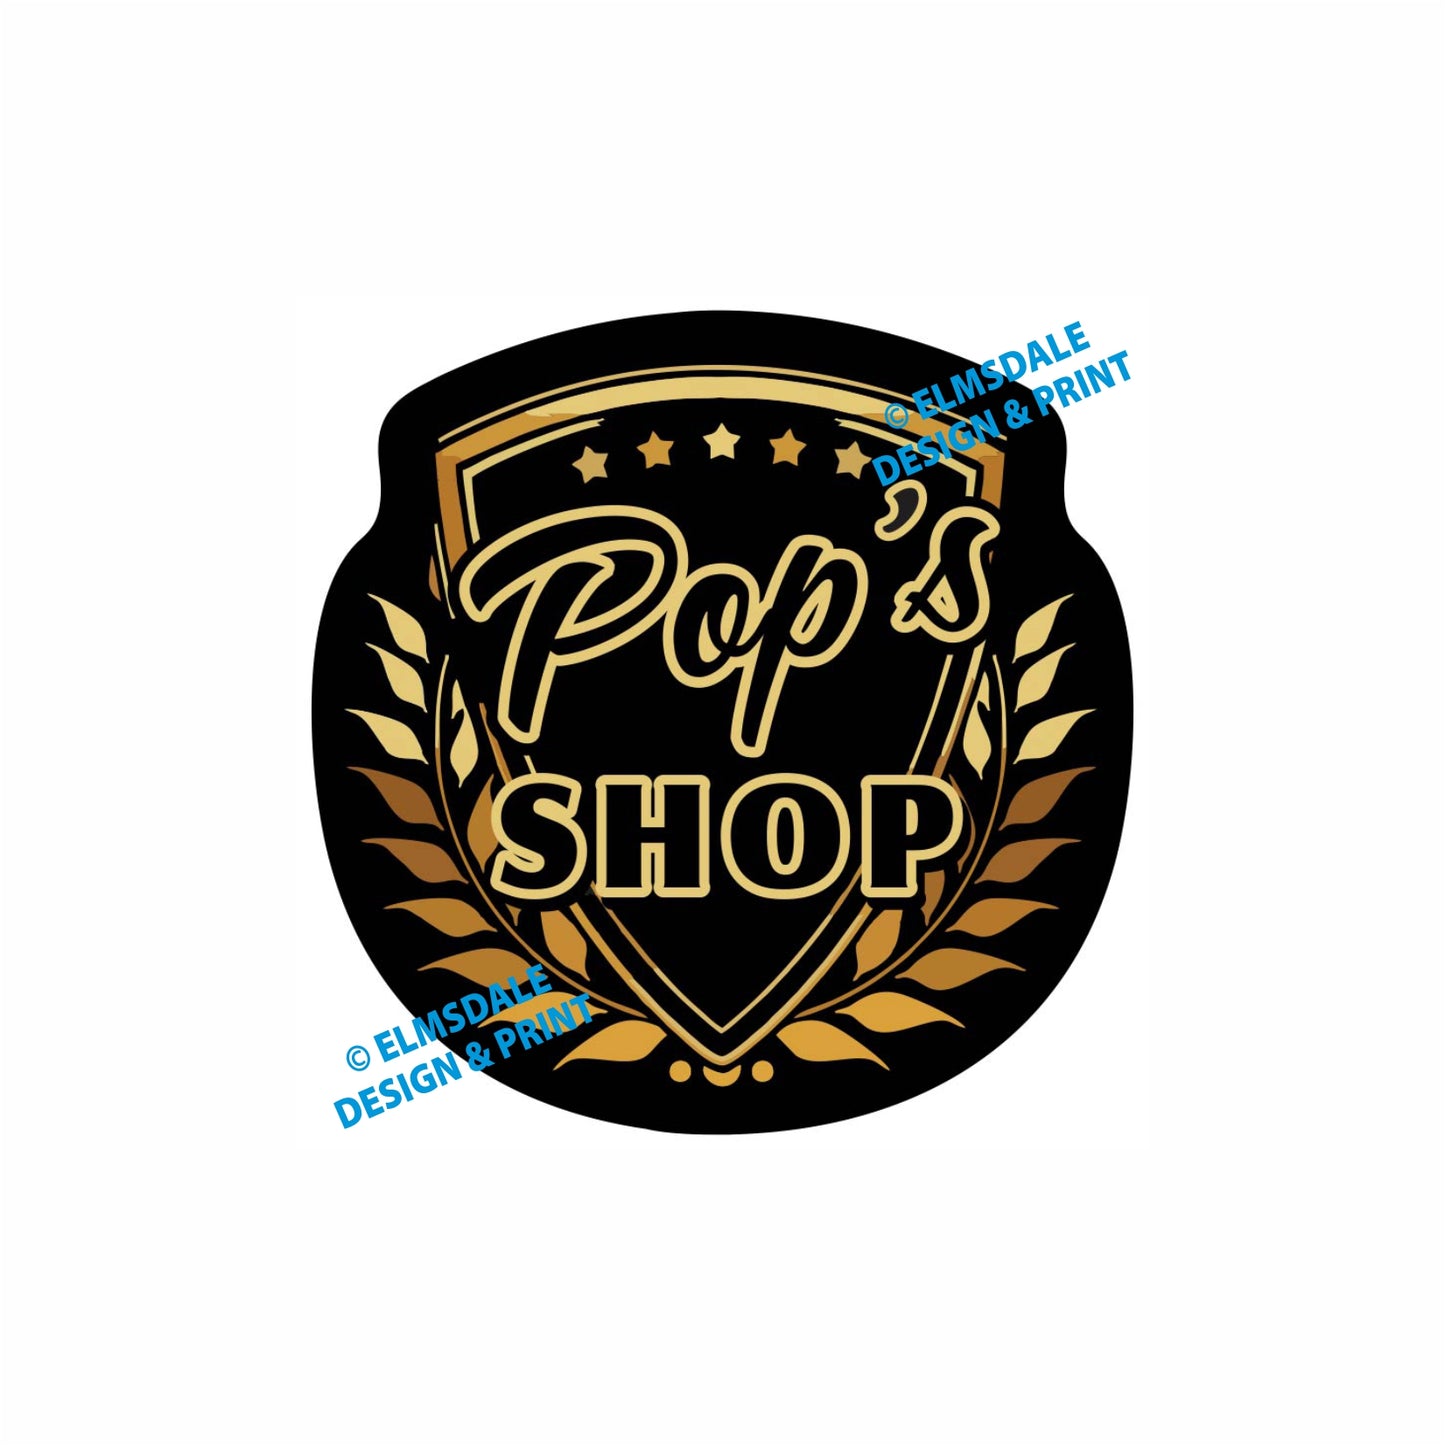 Pops Shop